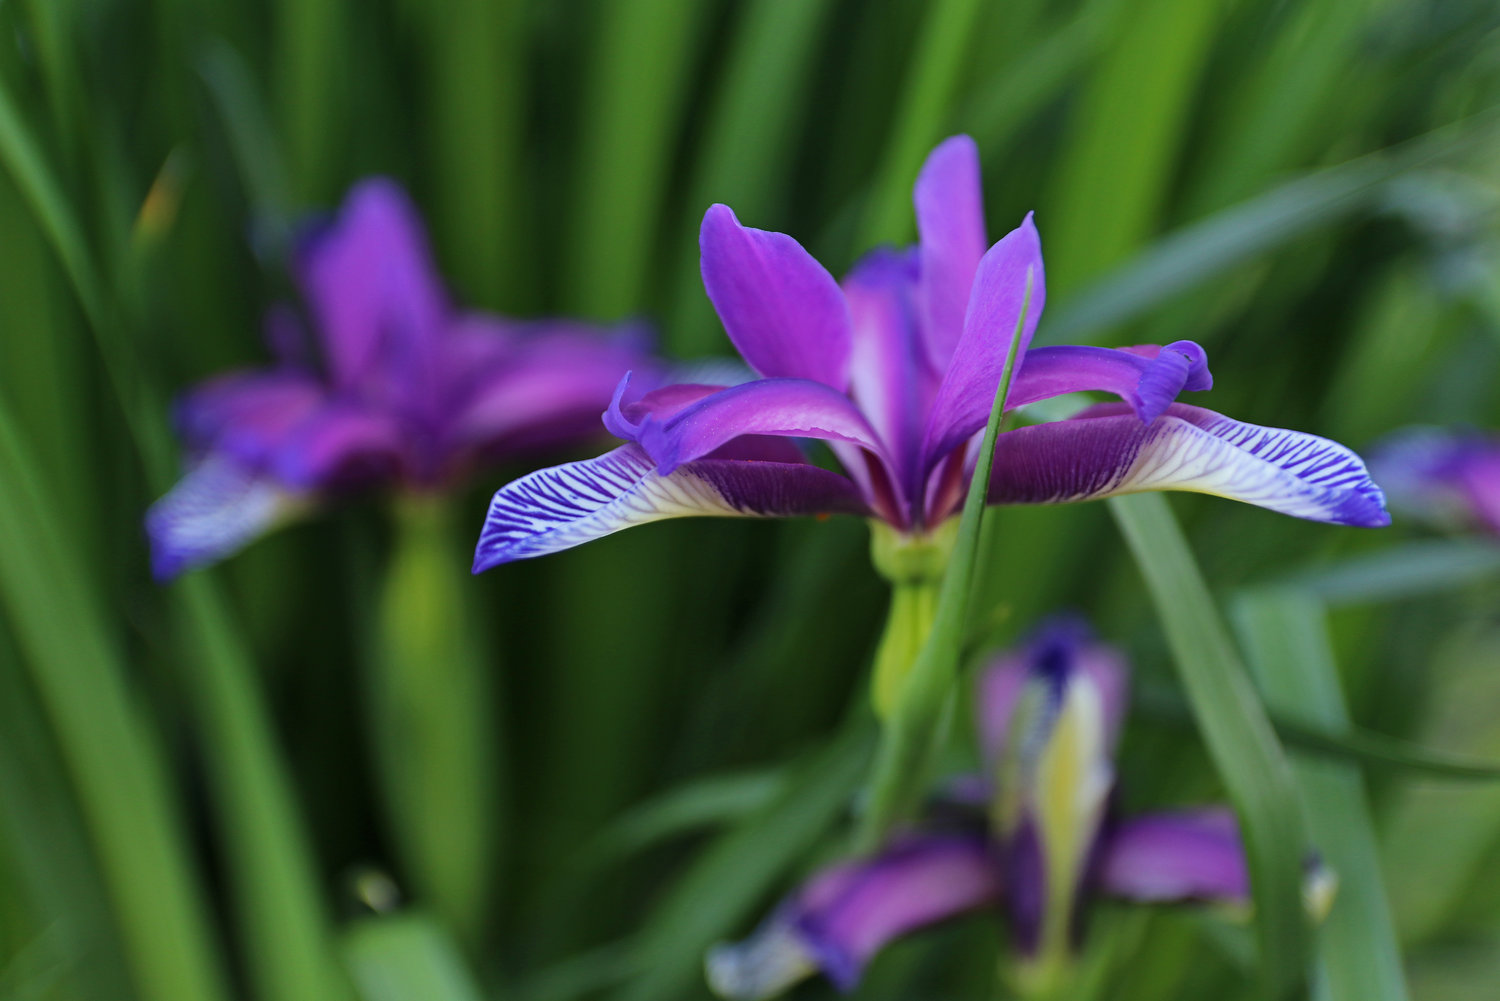 Iris graminea, such as those treasured by columnist Madeleine Wilde.